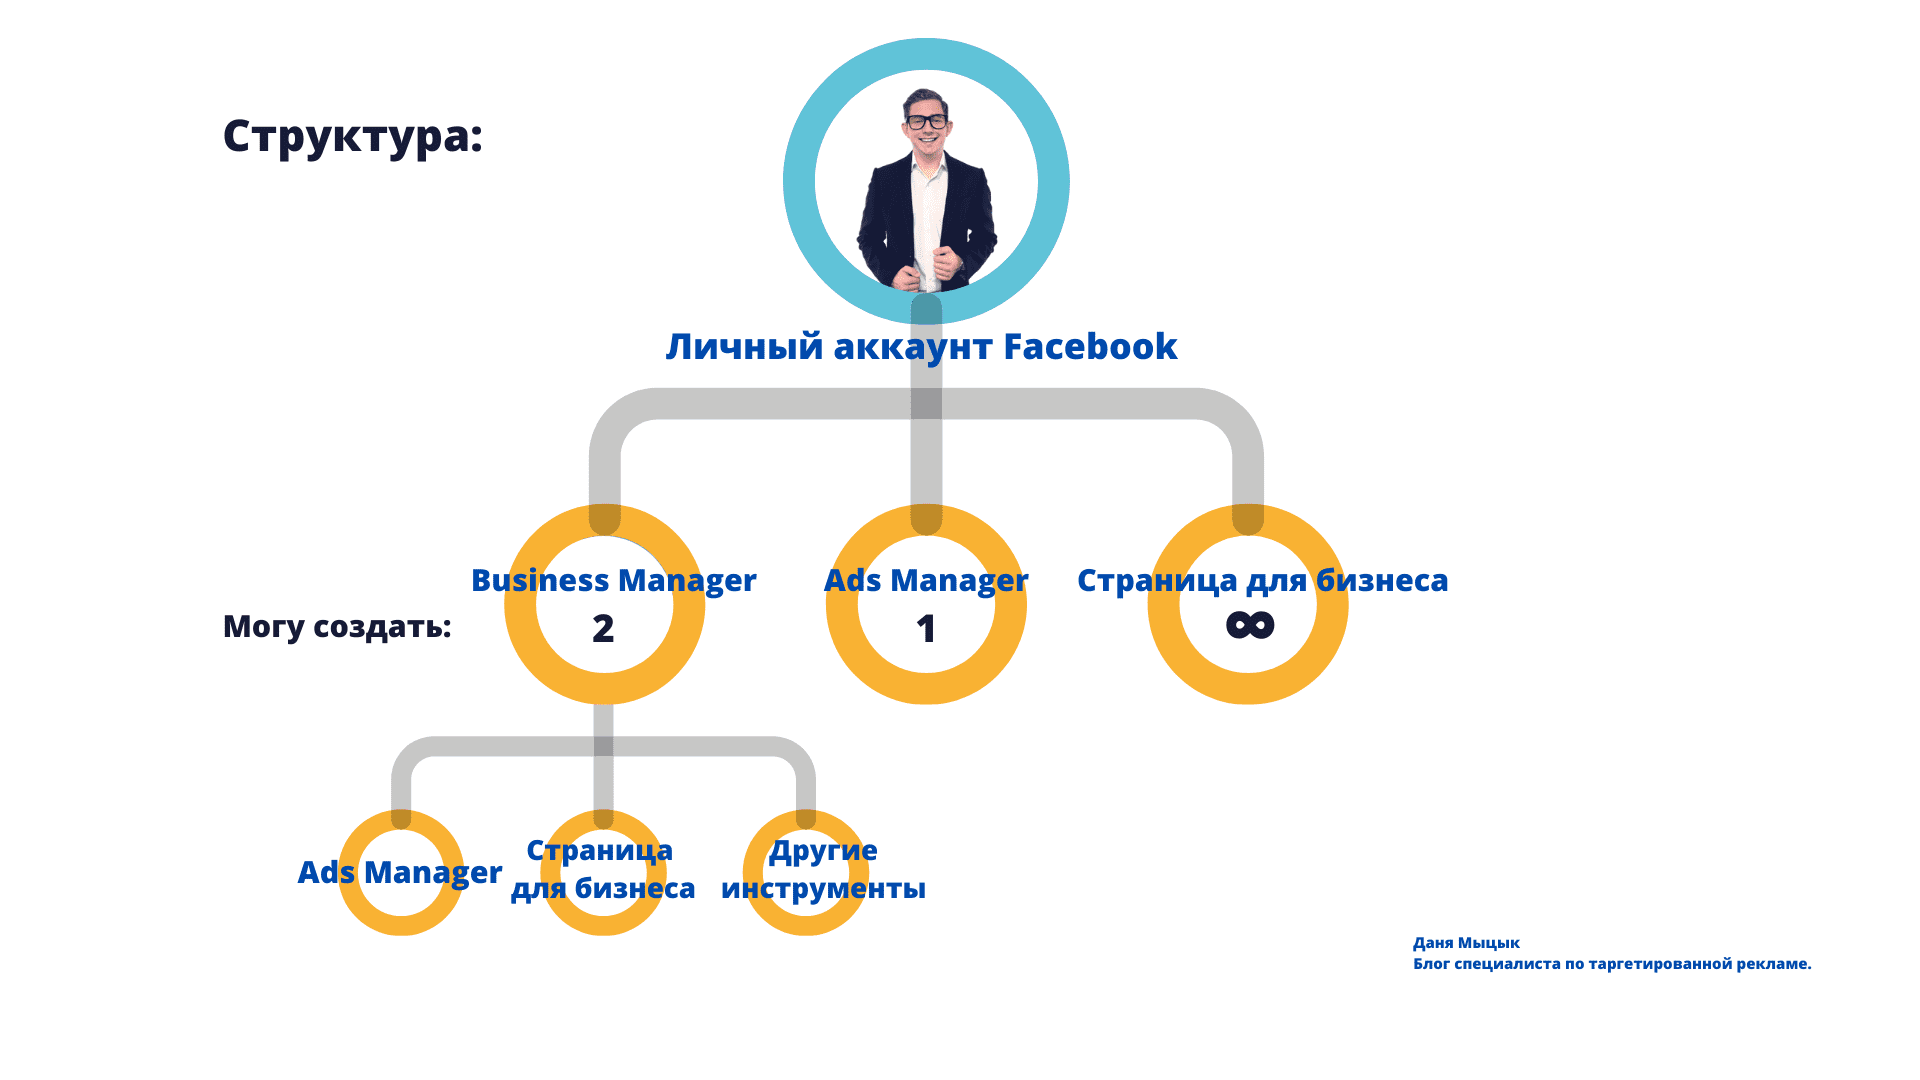 Структура в фейсбуке при работе с Бизнес Менеджером